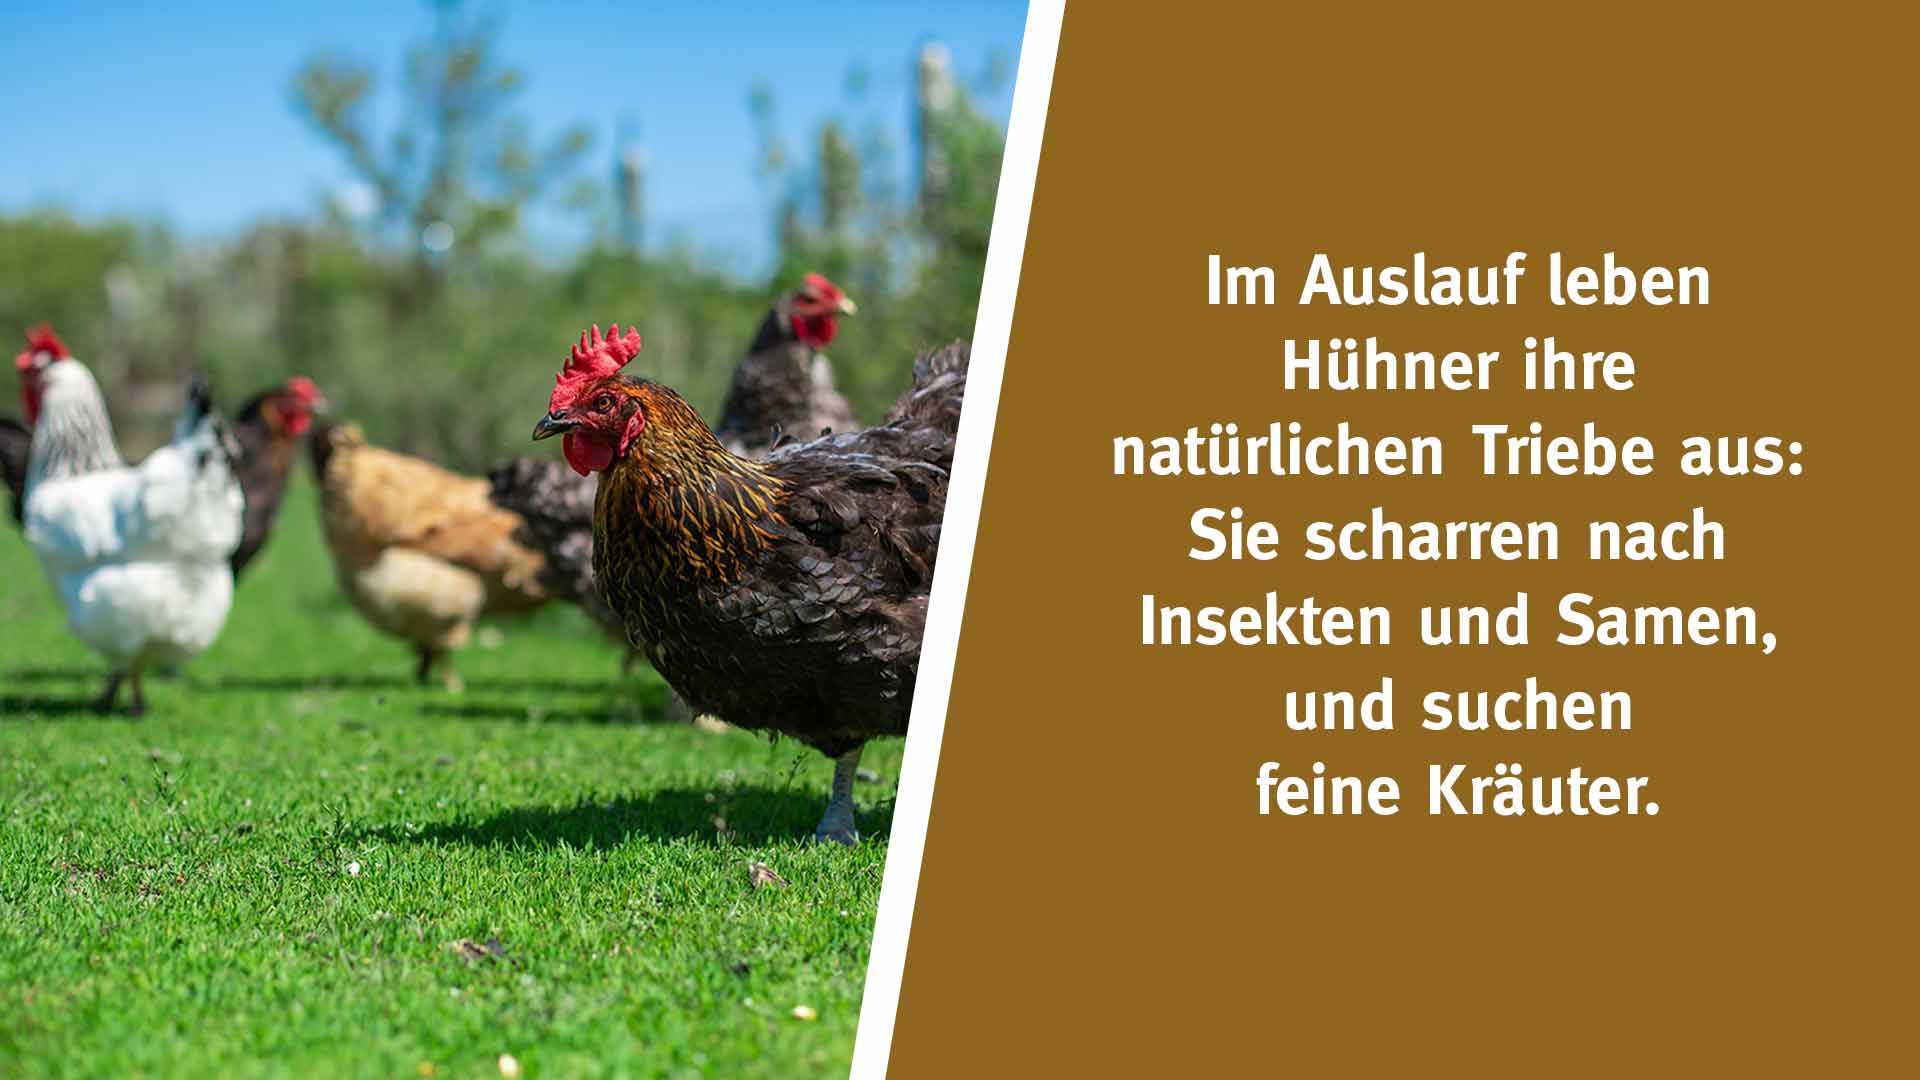 Im Auslauf leben Hühner ihre natürlichen Triebe aus: Sie scharren nach Insekten und Samen, und suchen feine Kräuter.